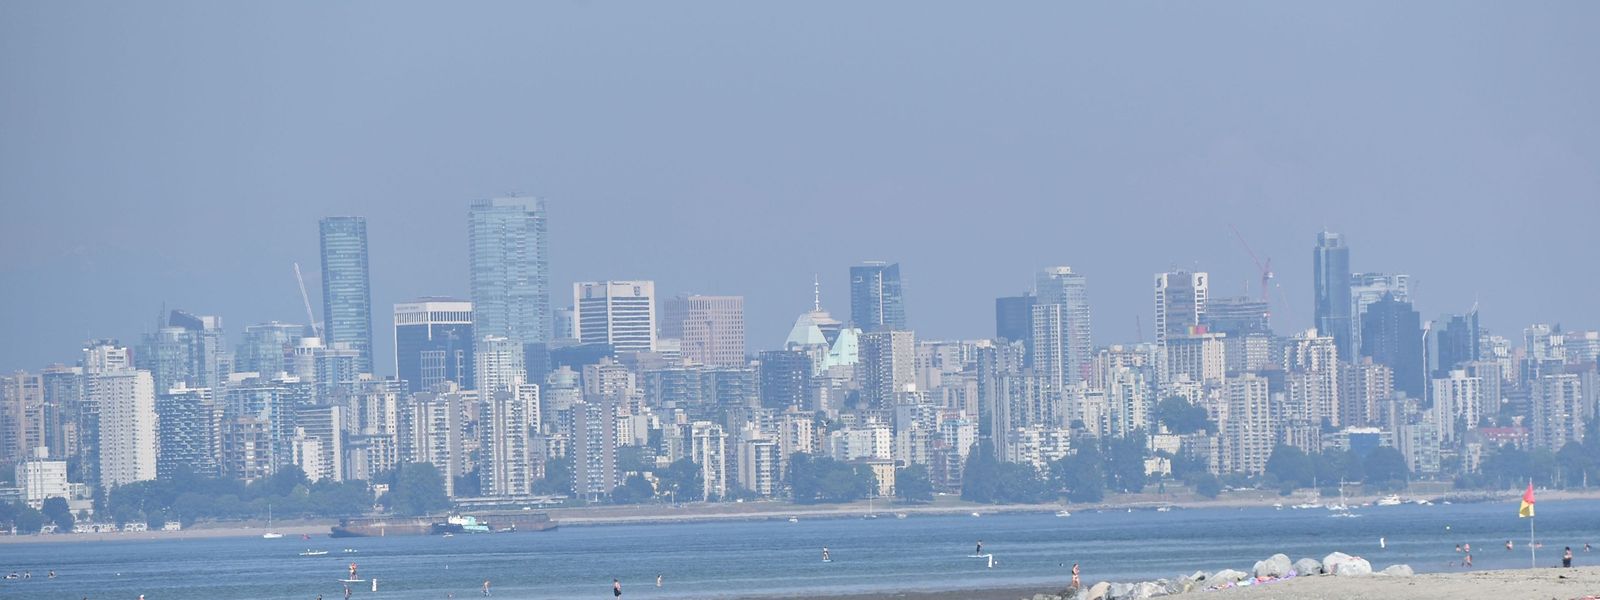 Die Stadt Vancouver in British Columbia unter der Hitzeglocke.